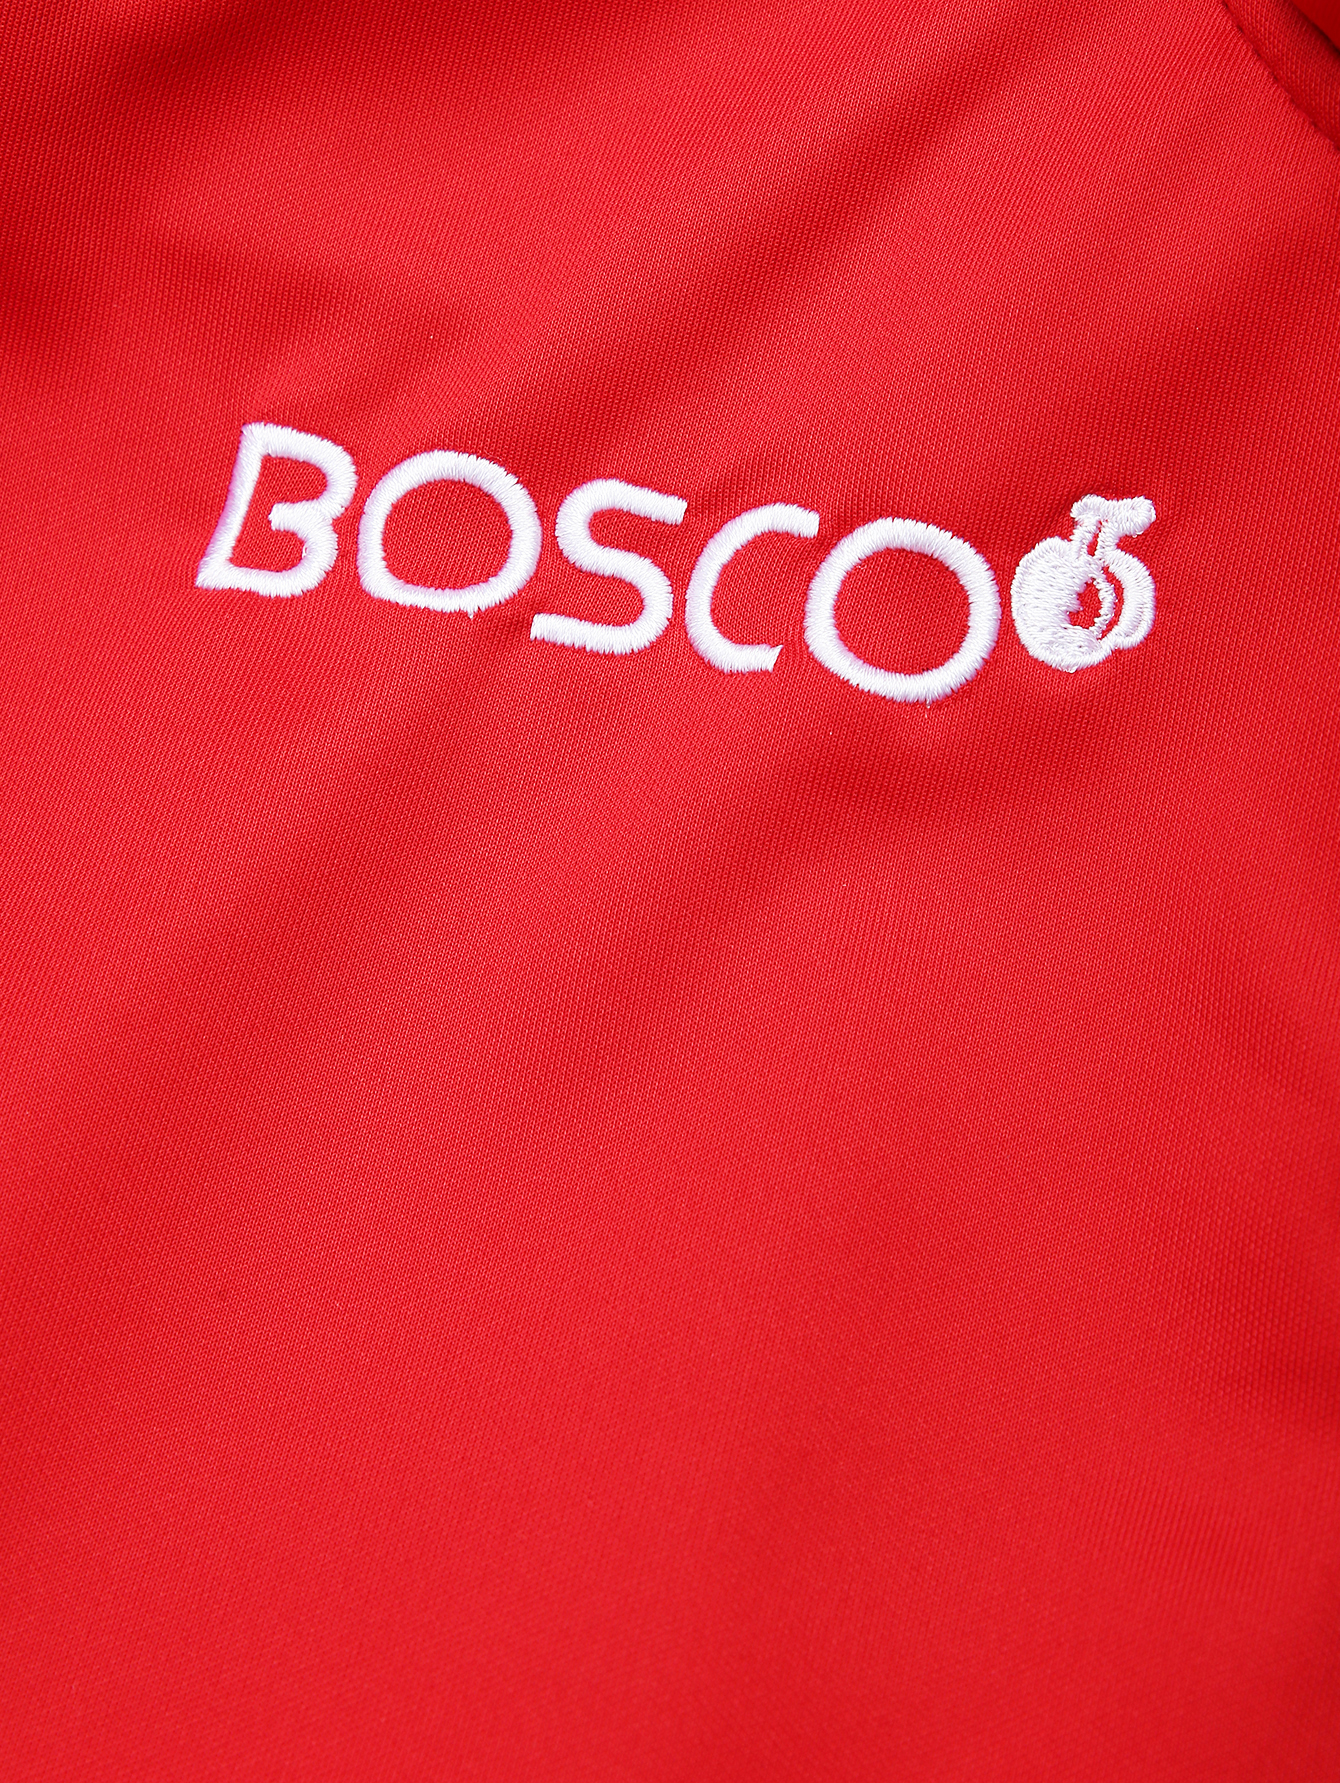 Боско. Боско спортивная одежда. Логотип Боско спорт. Bosco спортивный костюм. Ооо боско